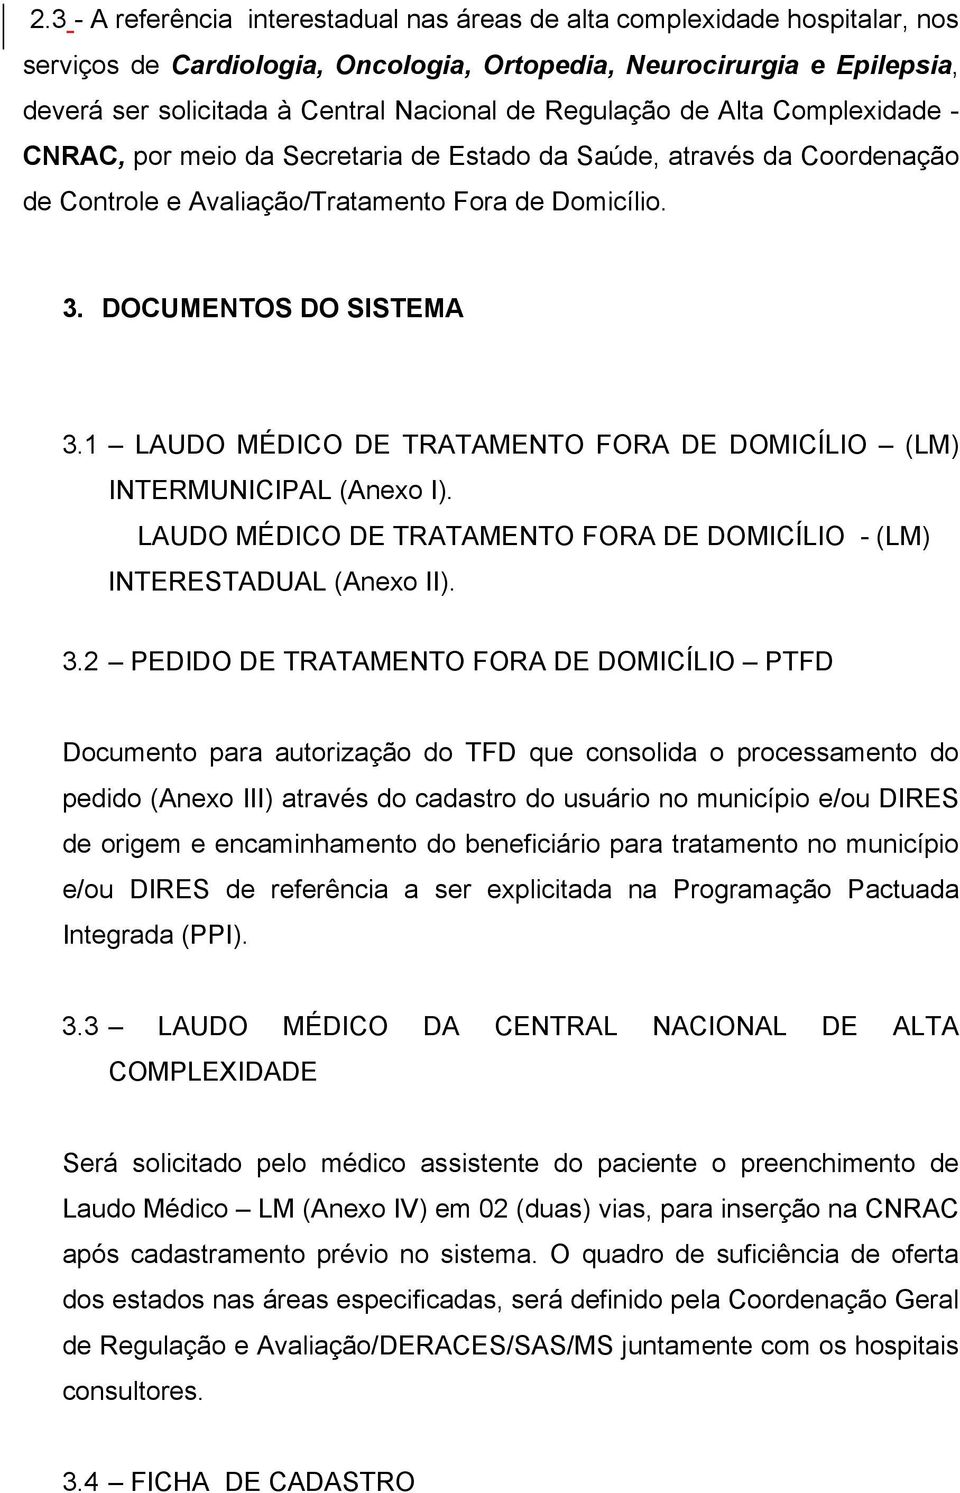 1 LAUDO MÉDICO DE TRATAMENTO FORA DE DOMICÍLIO (LM) INTERMUNICIPAL (Anexo I). LAUDO MÉDICO DE TRATAMENTO FORA DE DOMICÍLIO - (LM) INTERESTADUAL (Anexo II). 3.